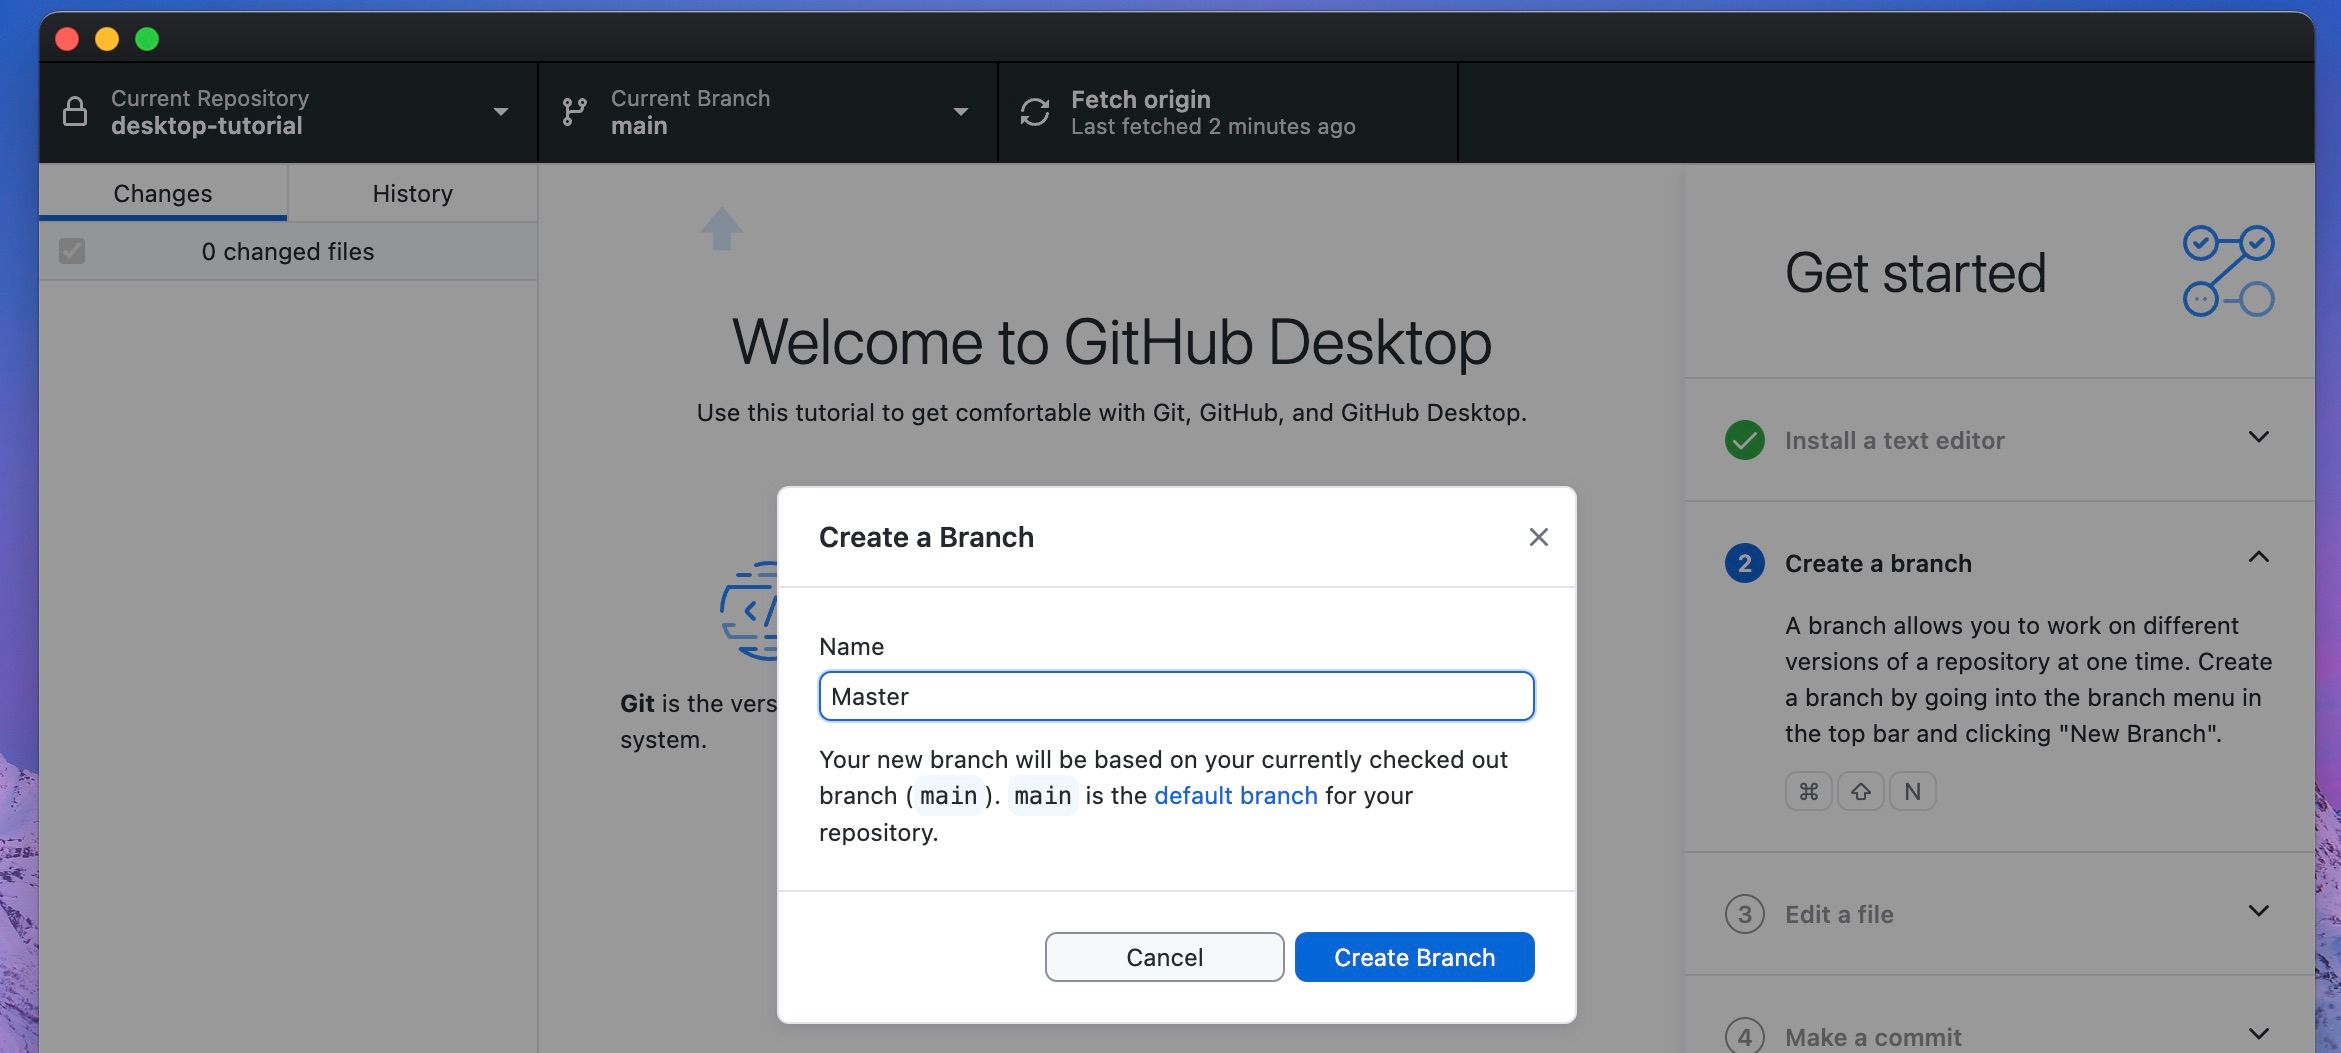 Đặt tên cho nhánh mới trong GitHub Desktop